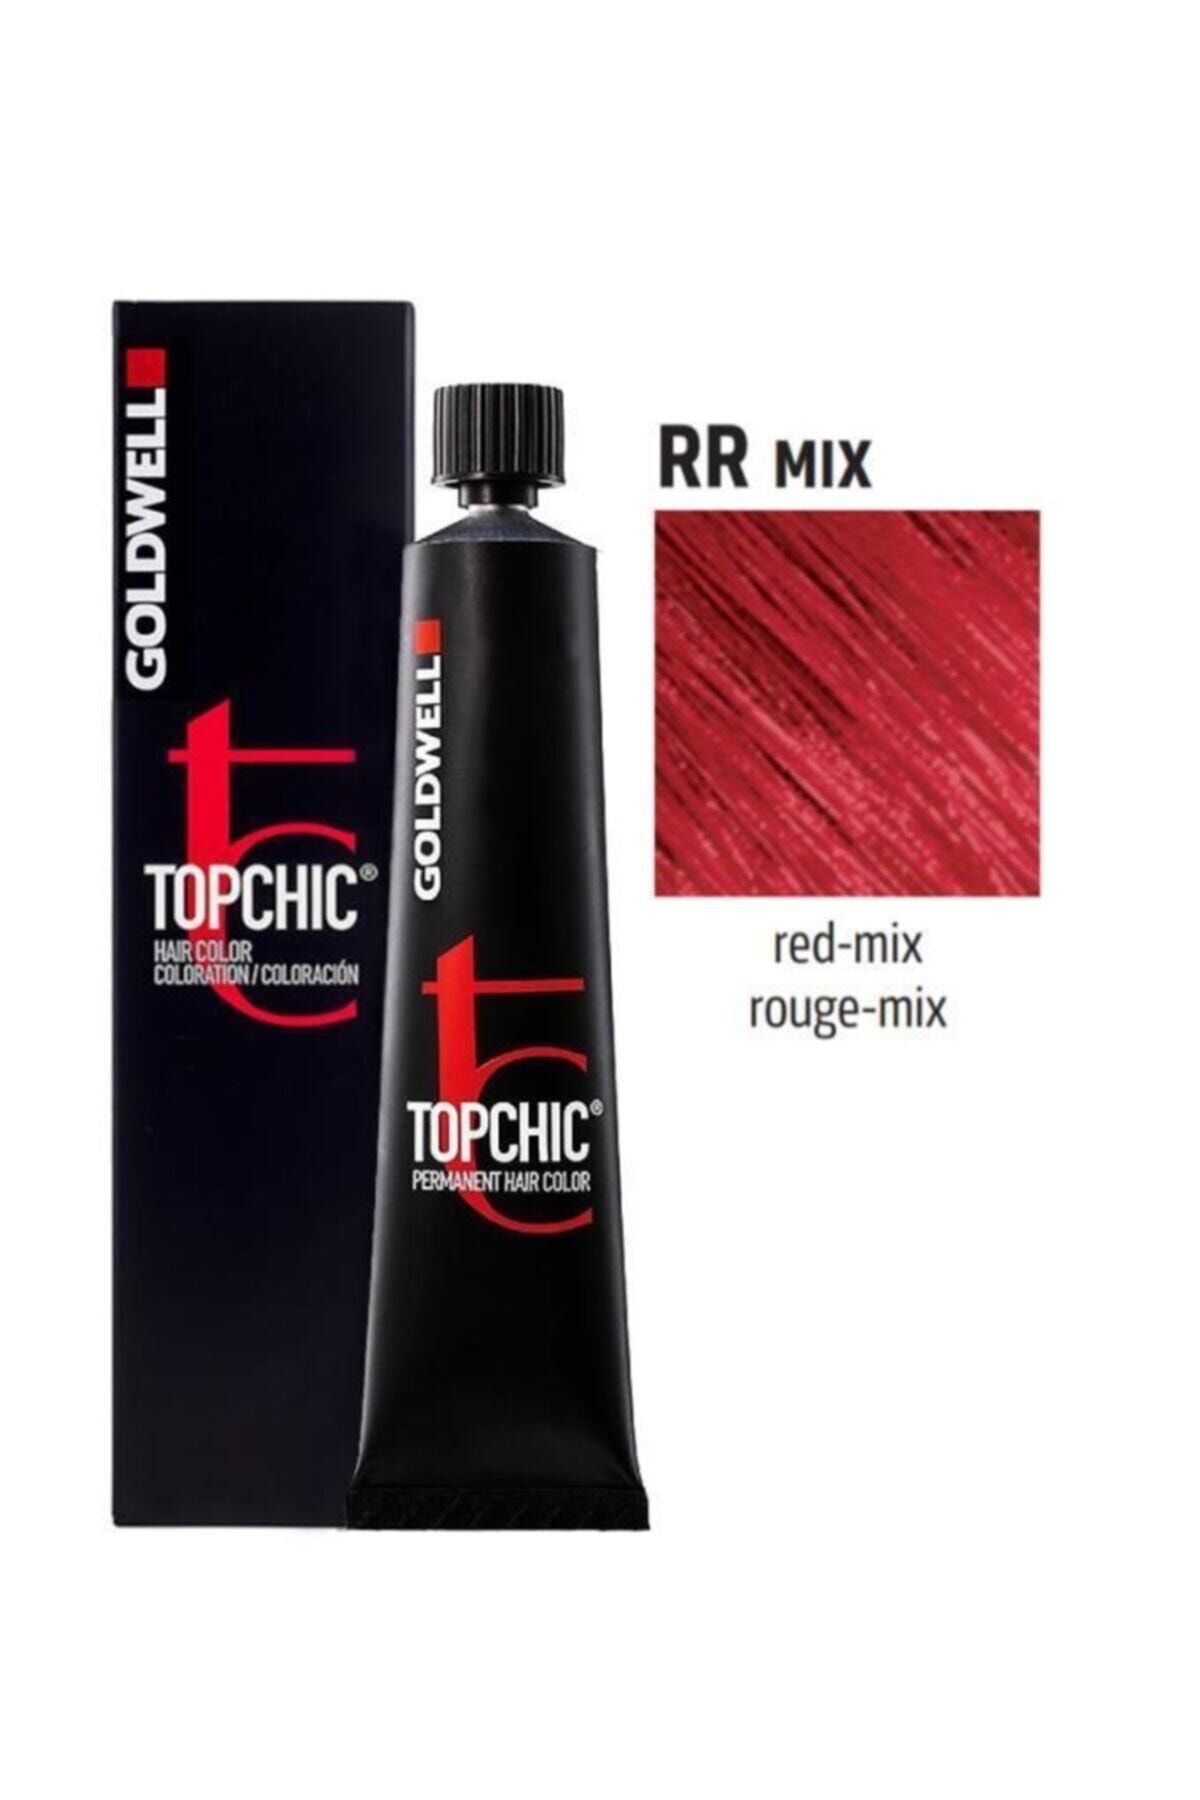 GOLDWELL Rr Mix Kızıl Kırmızı Topchic Saç Boyası Rr Mix Kızıl 60 ml